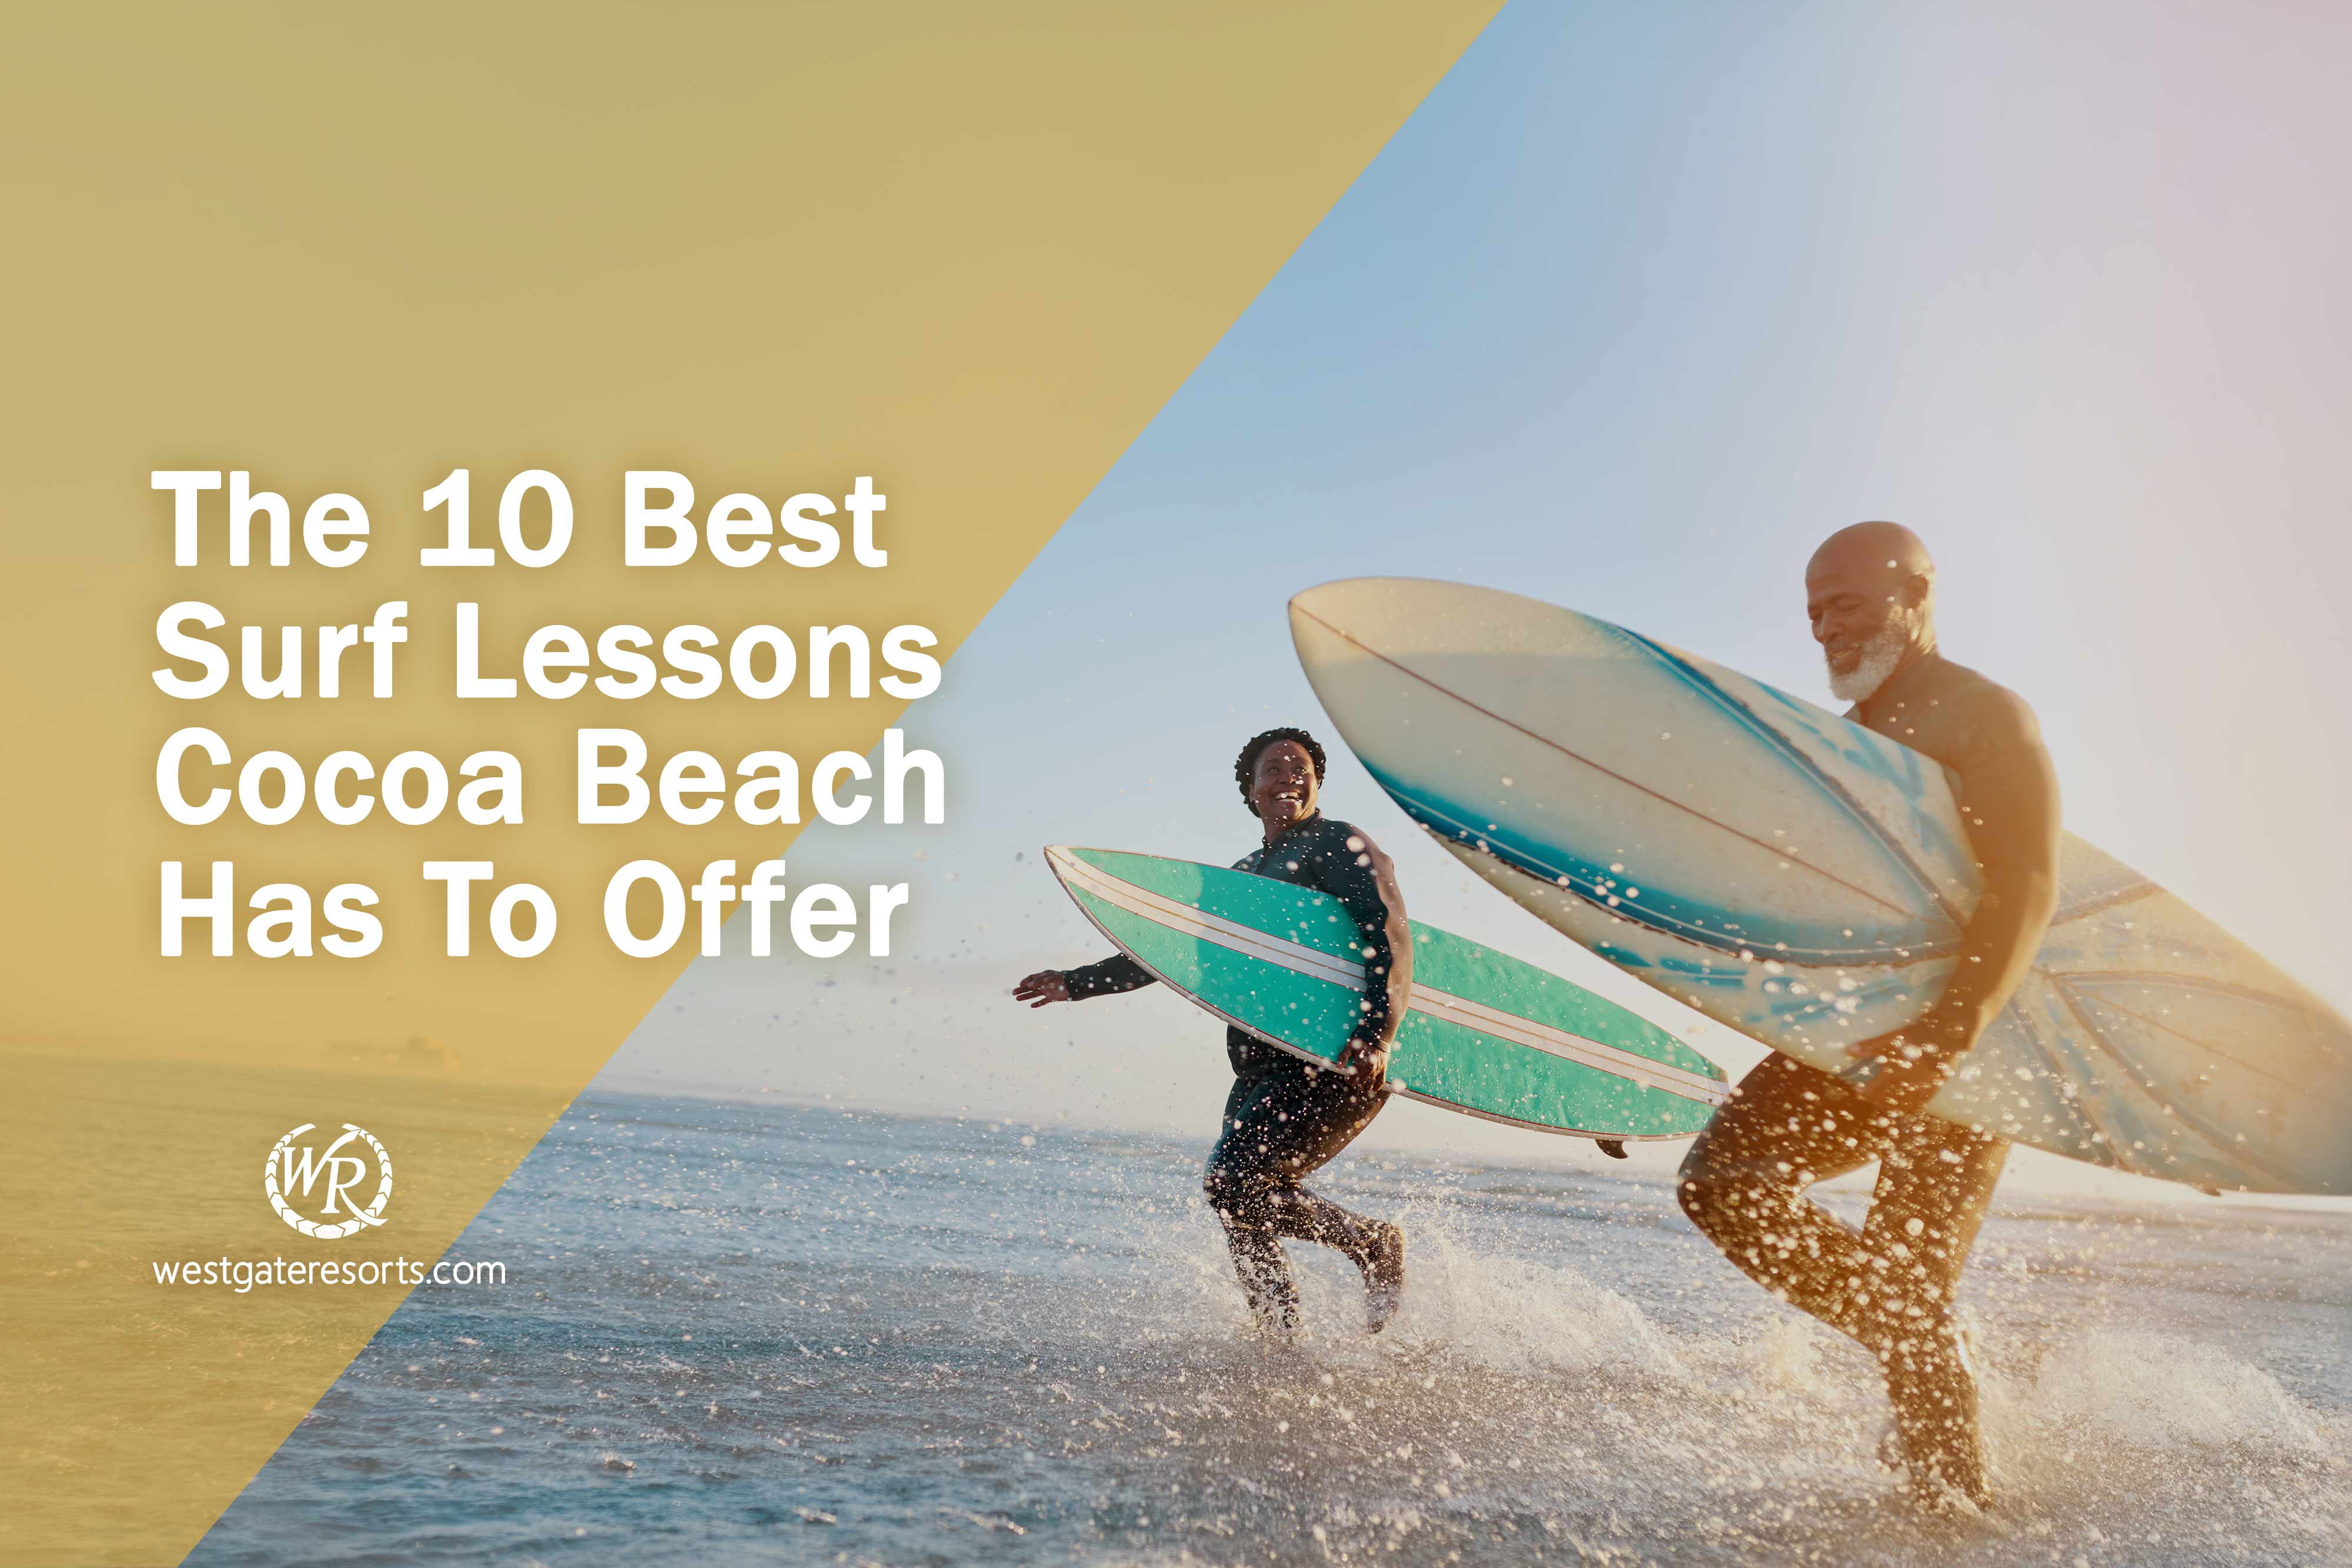 Las 10 mejores lecciones de surf de las que los lugareños de Cocoa Beach hablan maravillas